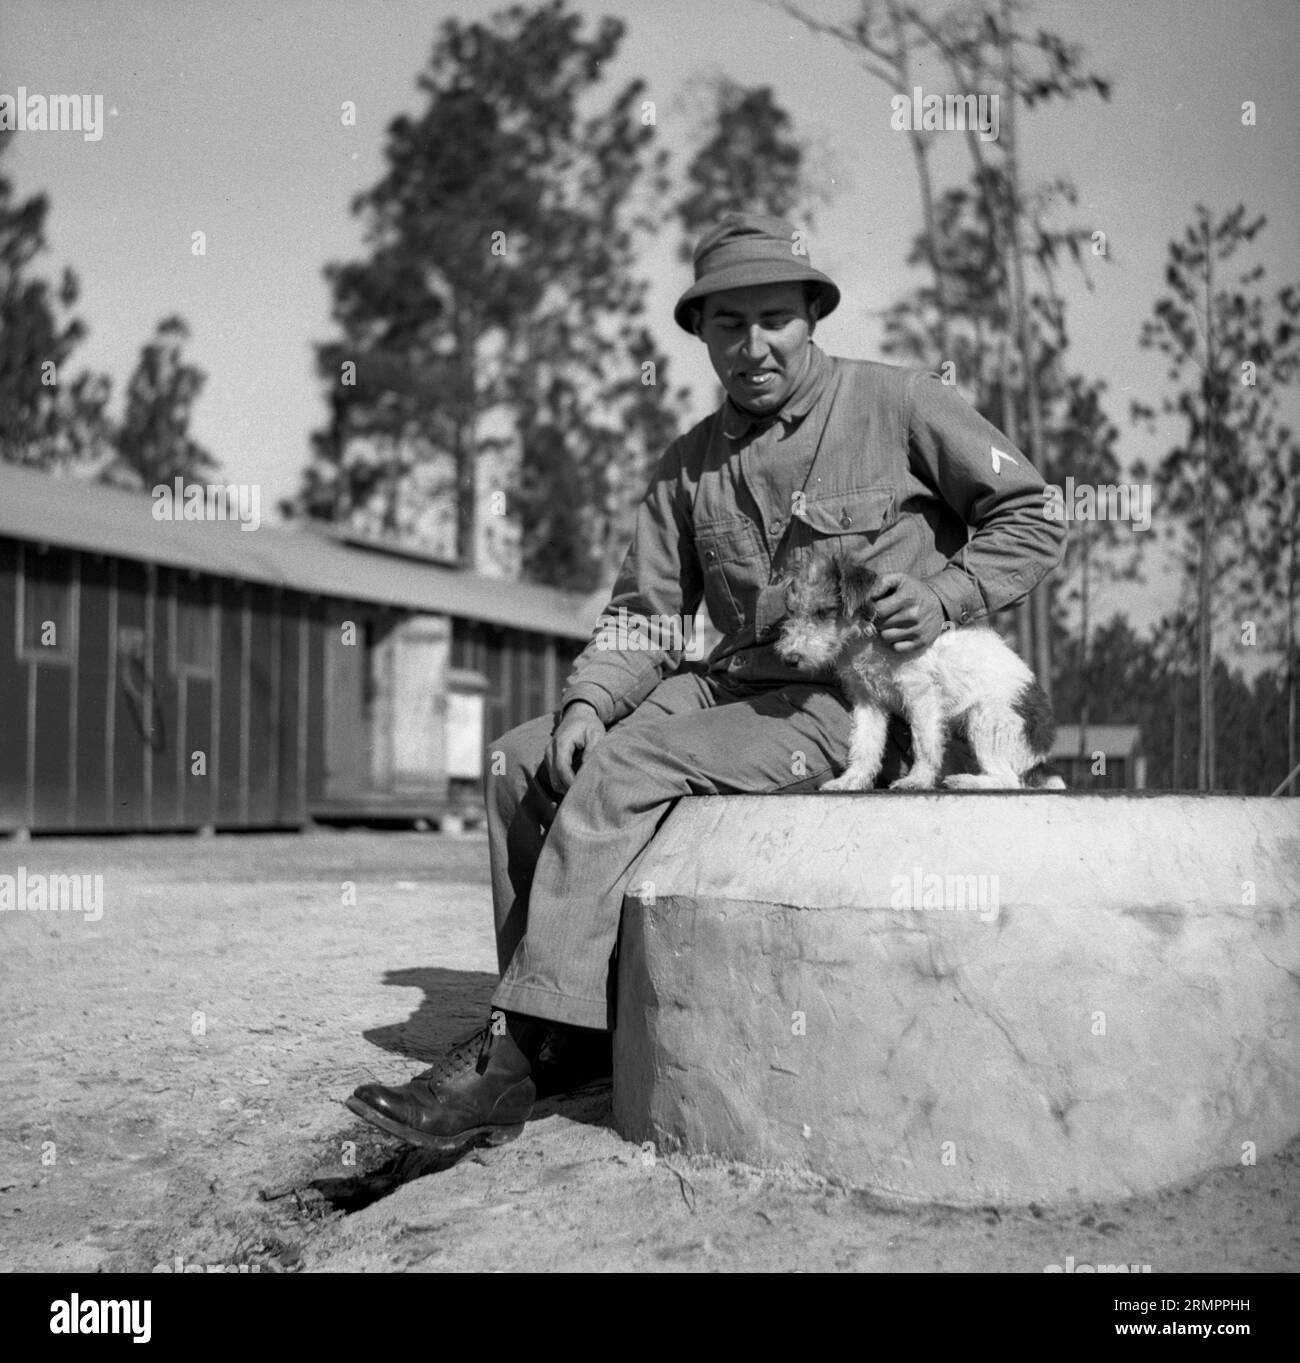 Solider mit Hund posiert für ein Foto. Mitglieder der 114. Infanteriedivision der US-Armee trainieren im Zweiten Weltkrieg gegen Deutschland in Europa. Stockfoto